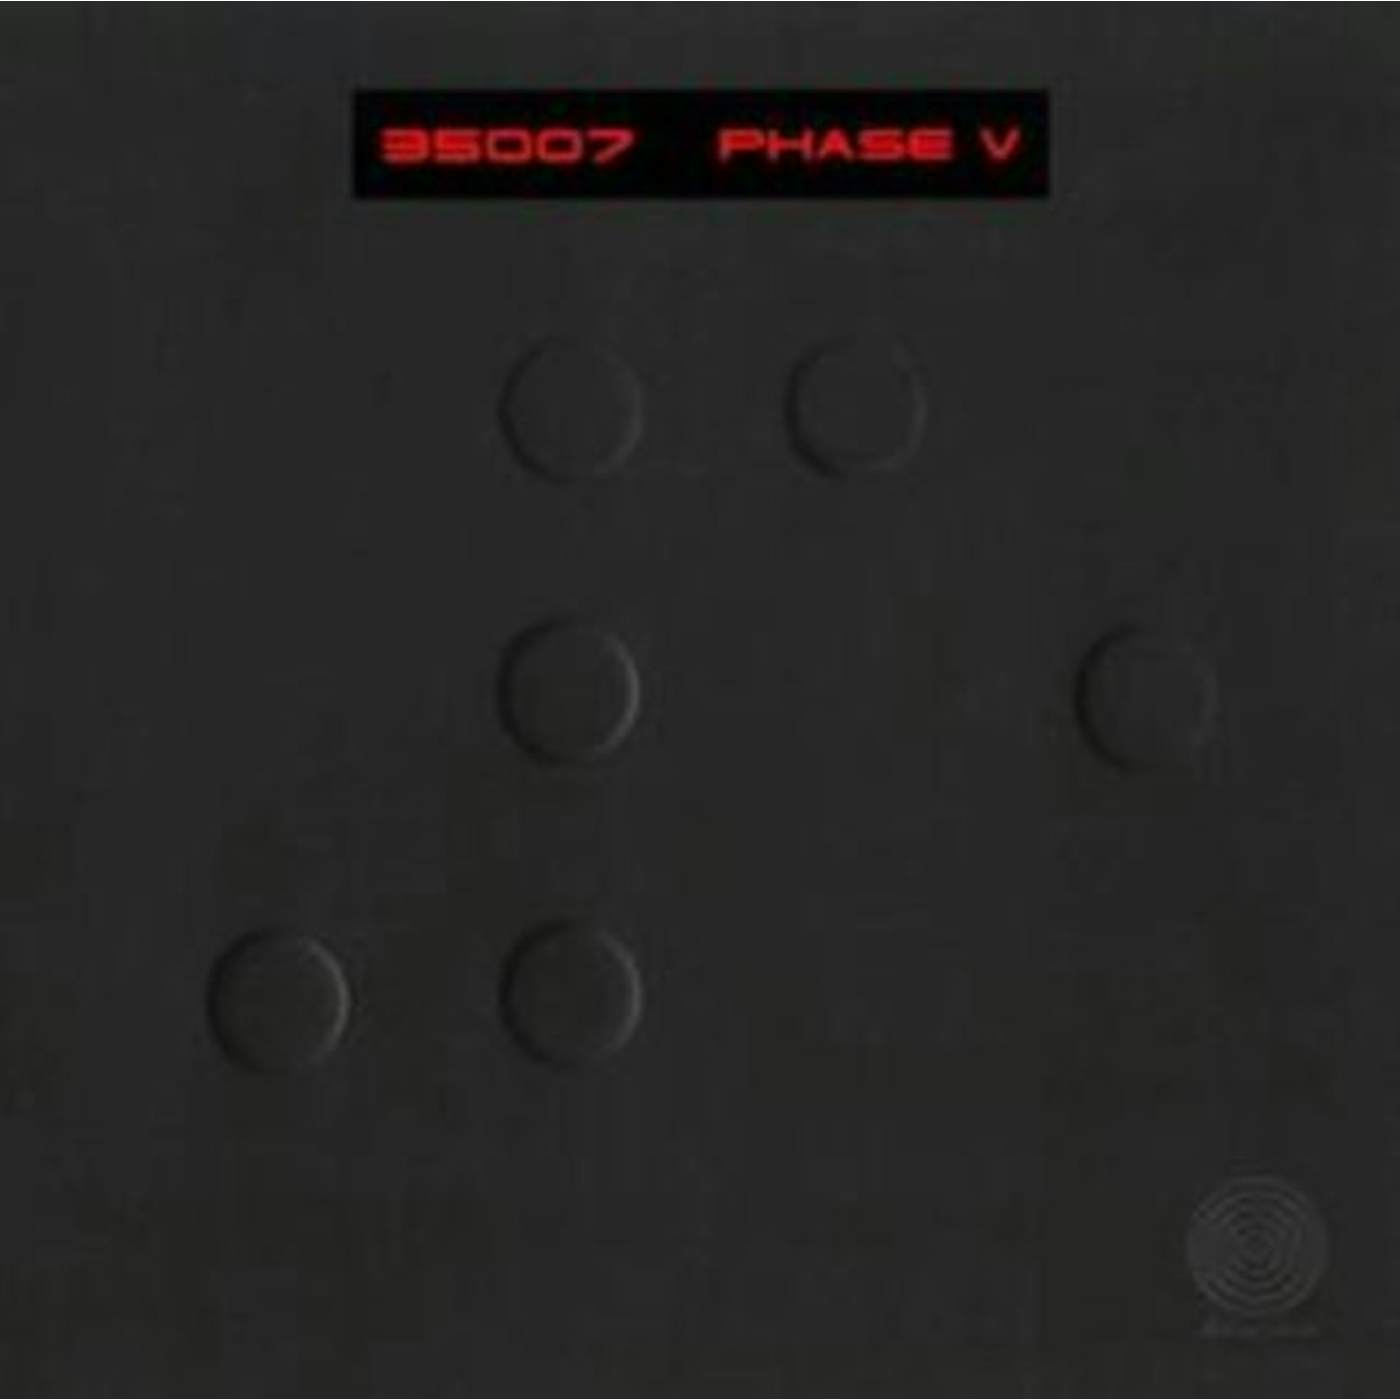 35007 LP - Phase V (Vinyl)